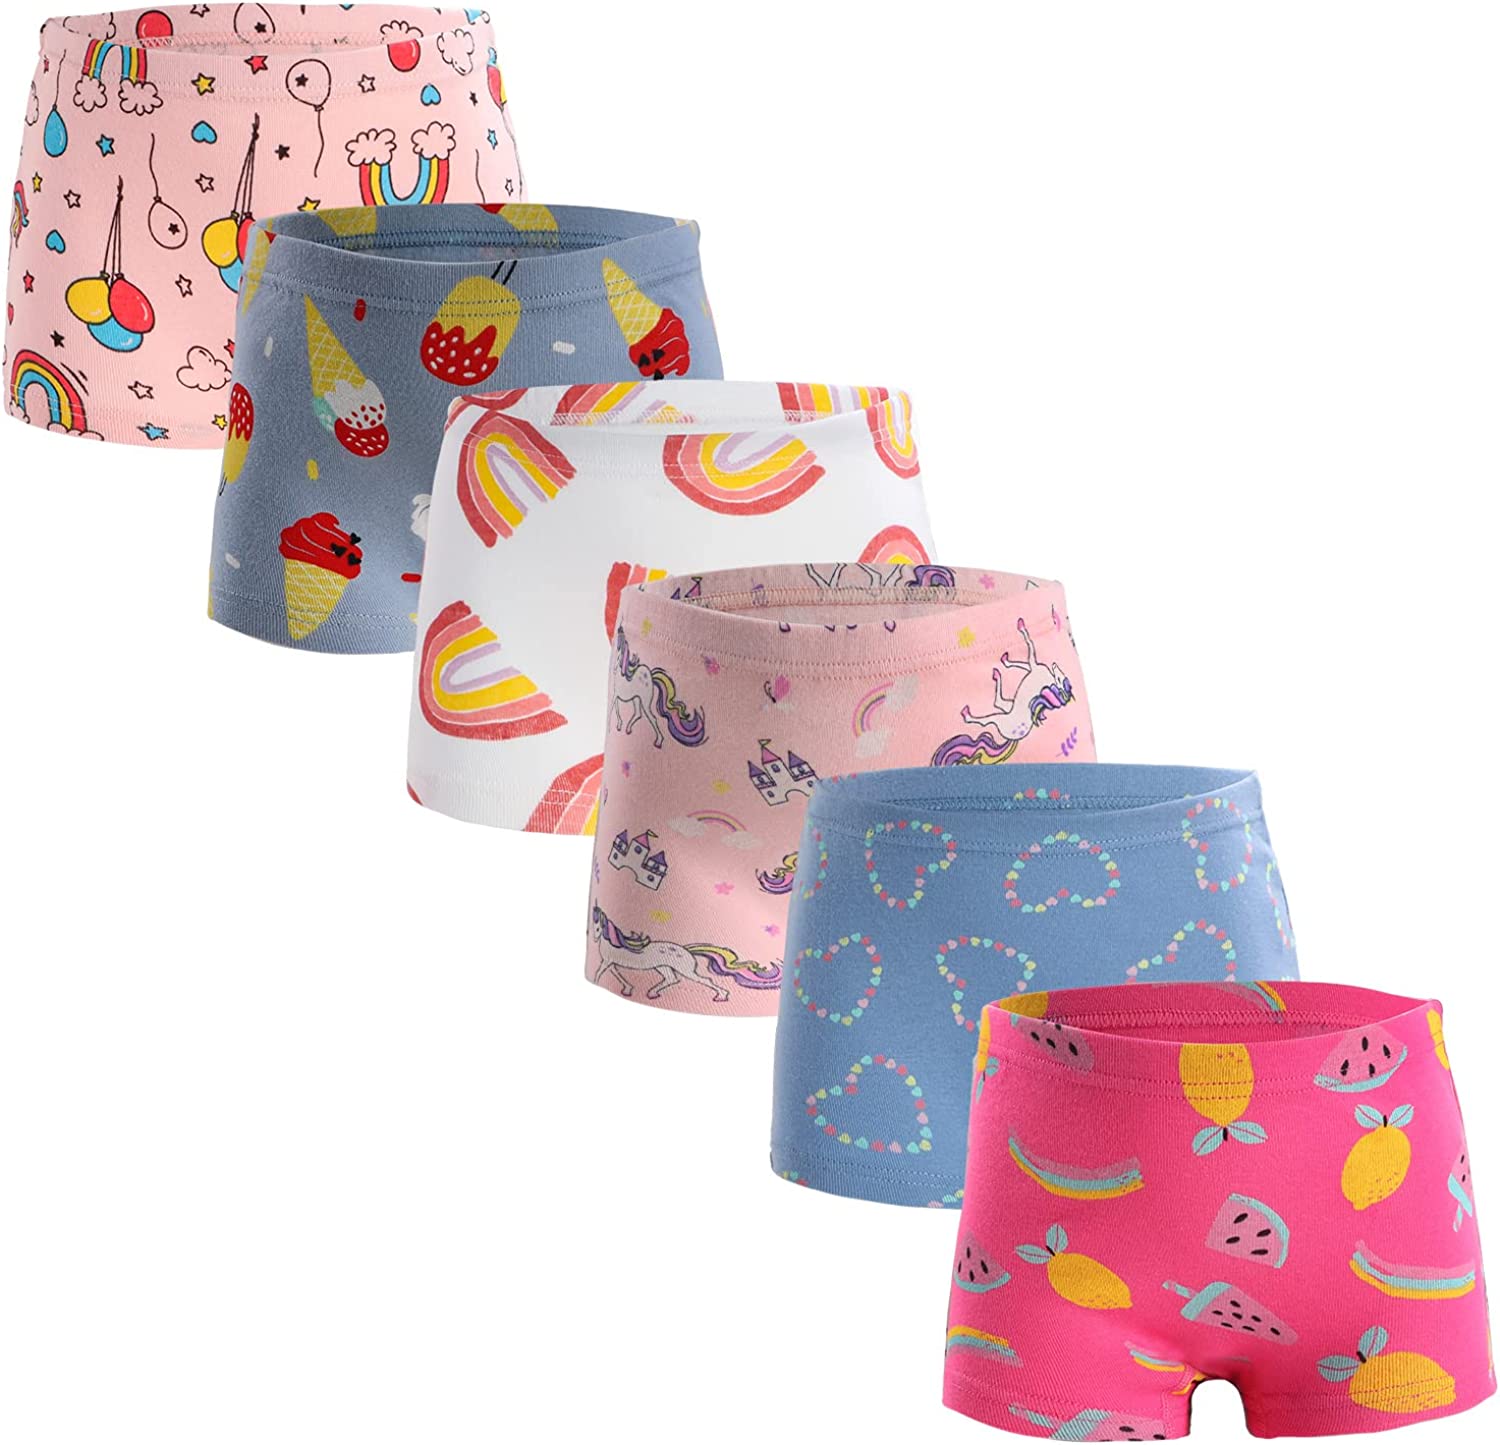 Boboking Soft Cotton Girls' Panties Boyshort Little Girls' Underwear  Toddler Und